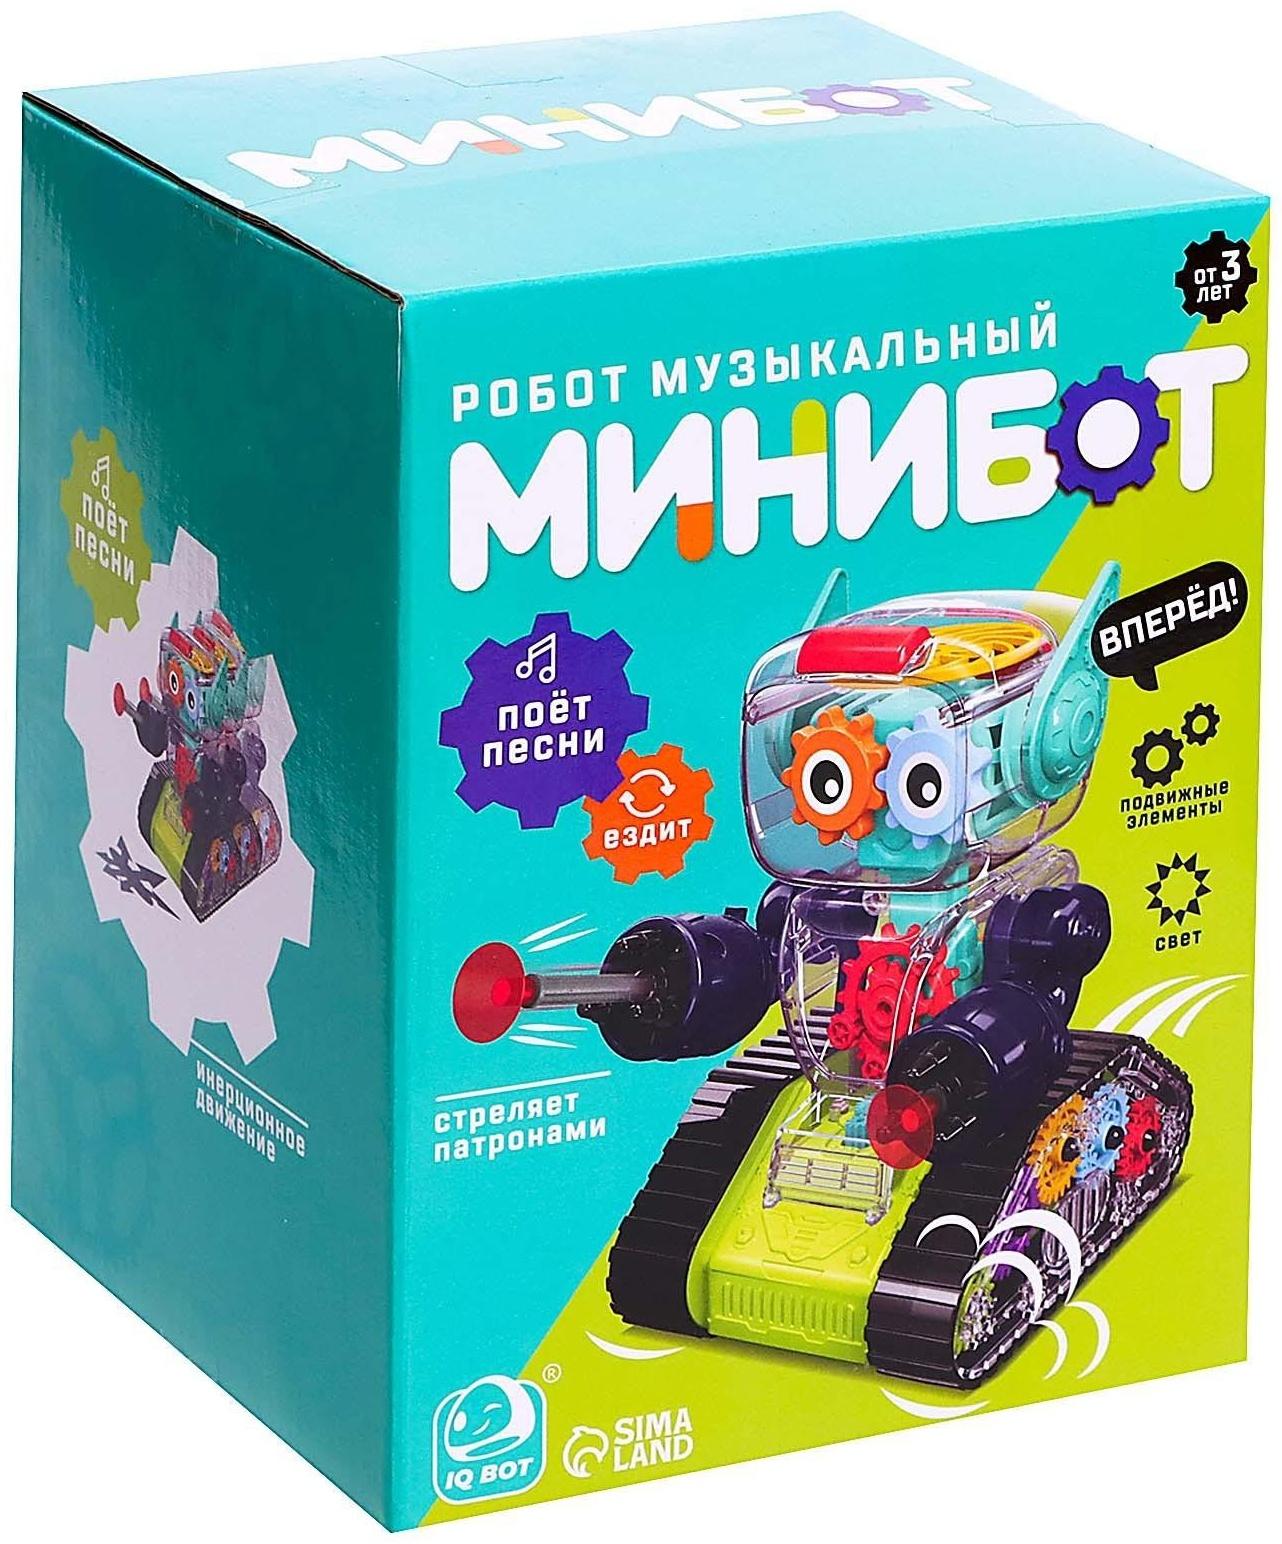 Робот с шестерёнками «Минибот», русское озвучивание, световые эффекты, цвет зелёный